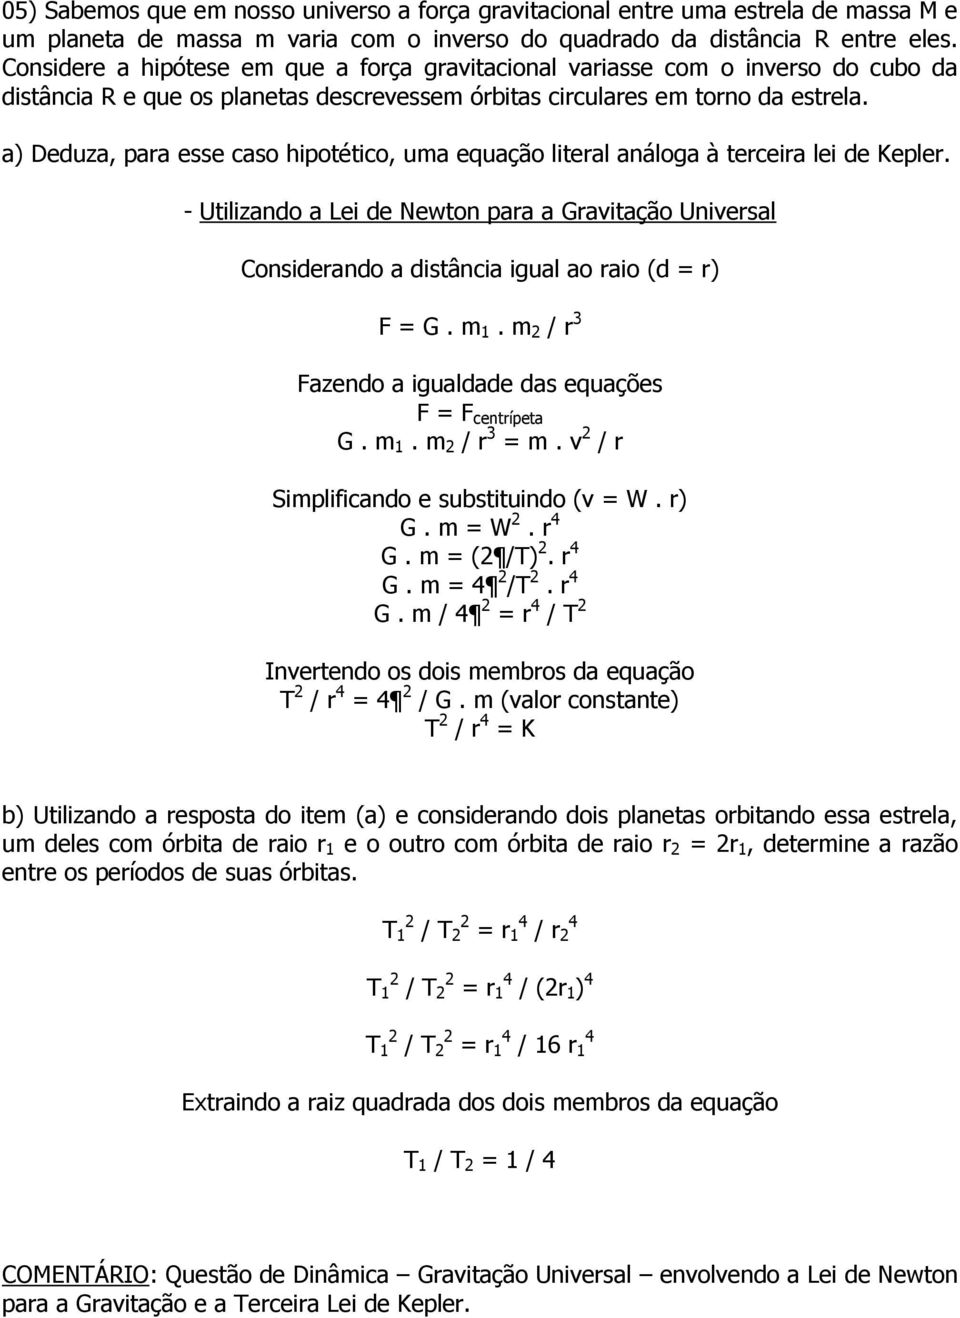 a) Deduza, para esse caso hipotético, uma equação literal análoga à terceira lei de Kepler.